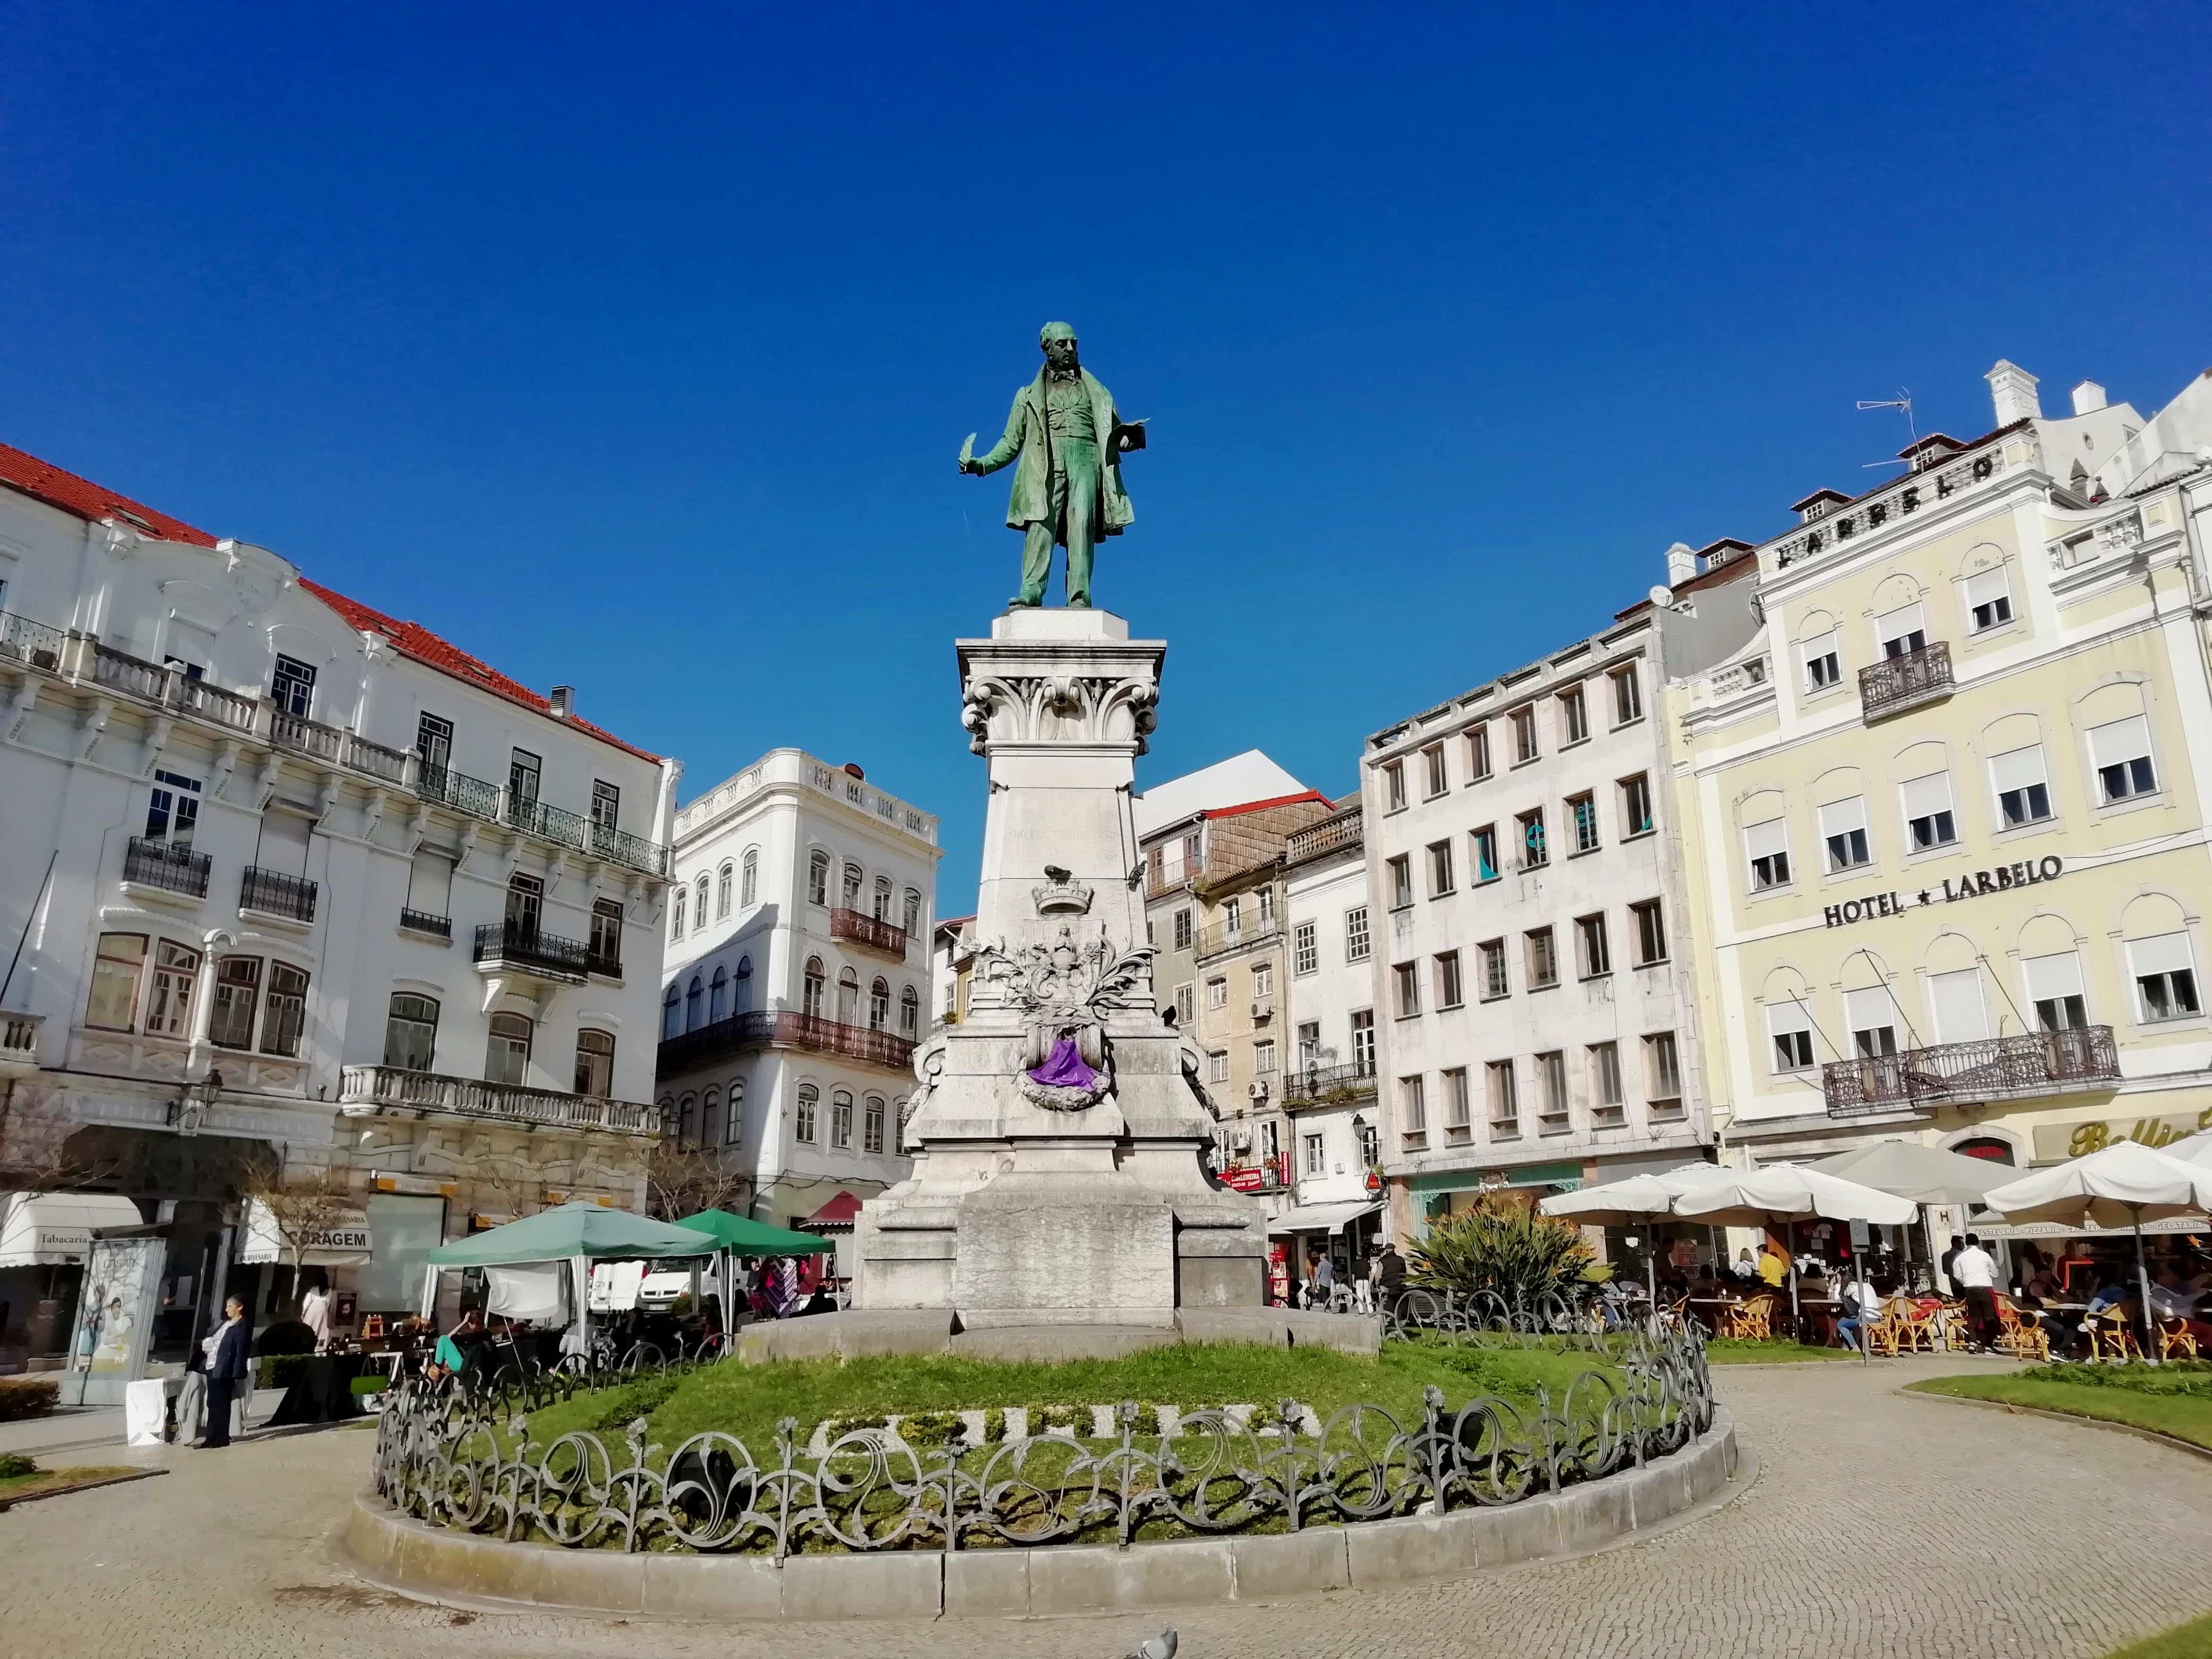 Statue in Coimbra, Central Portugal